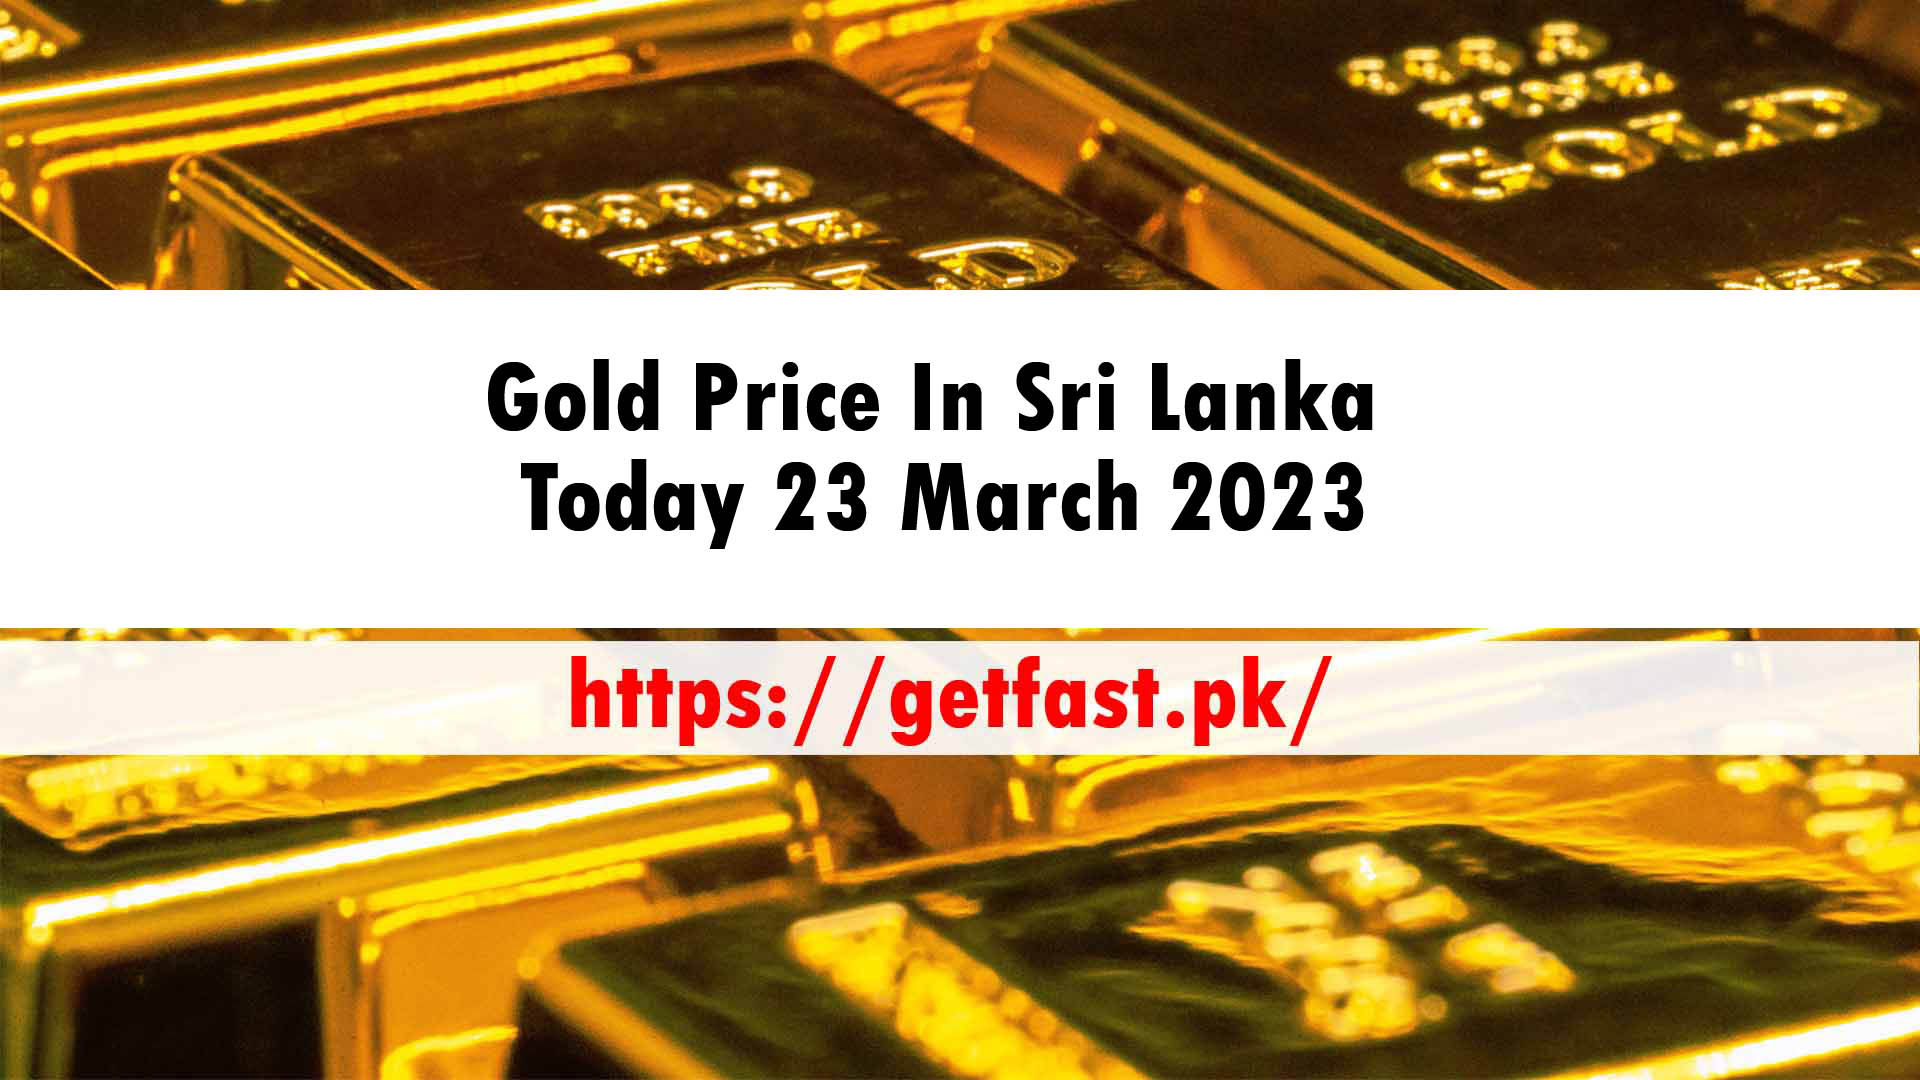 Gold Price In Sri Lanka Today 23 March 2023